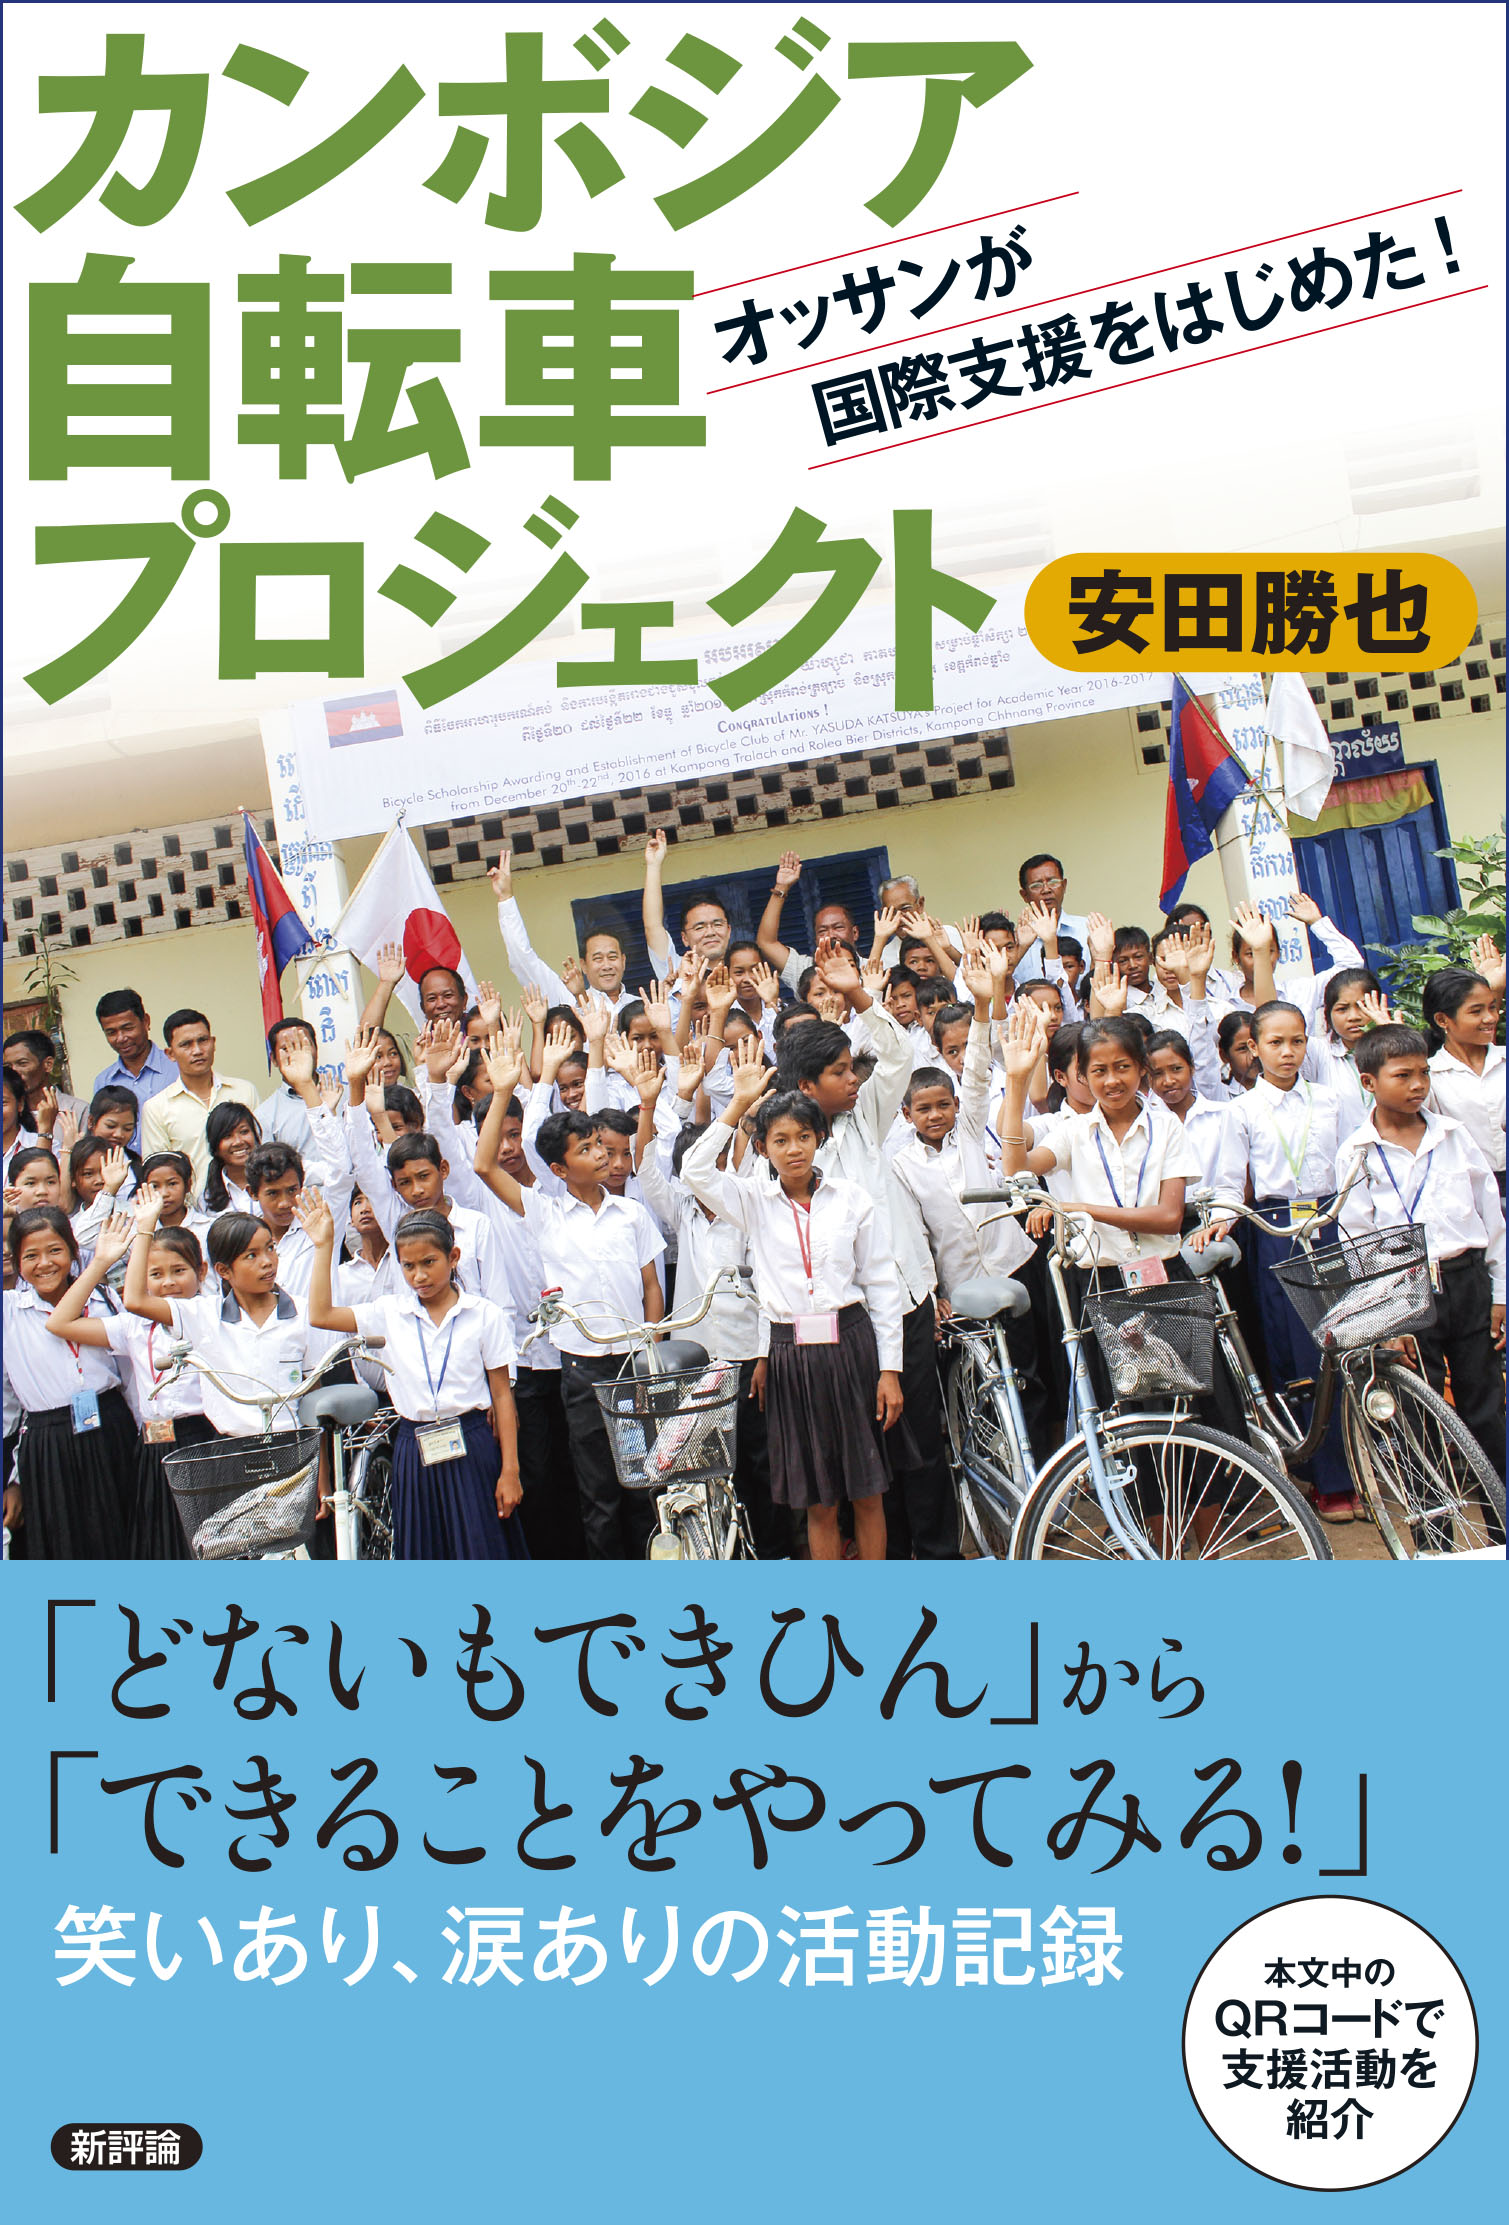 カンボジア自転車プロジェクトの商品画像